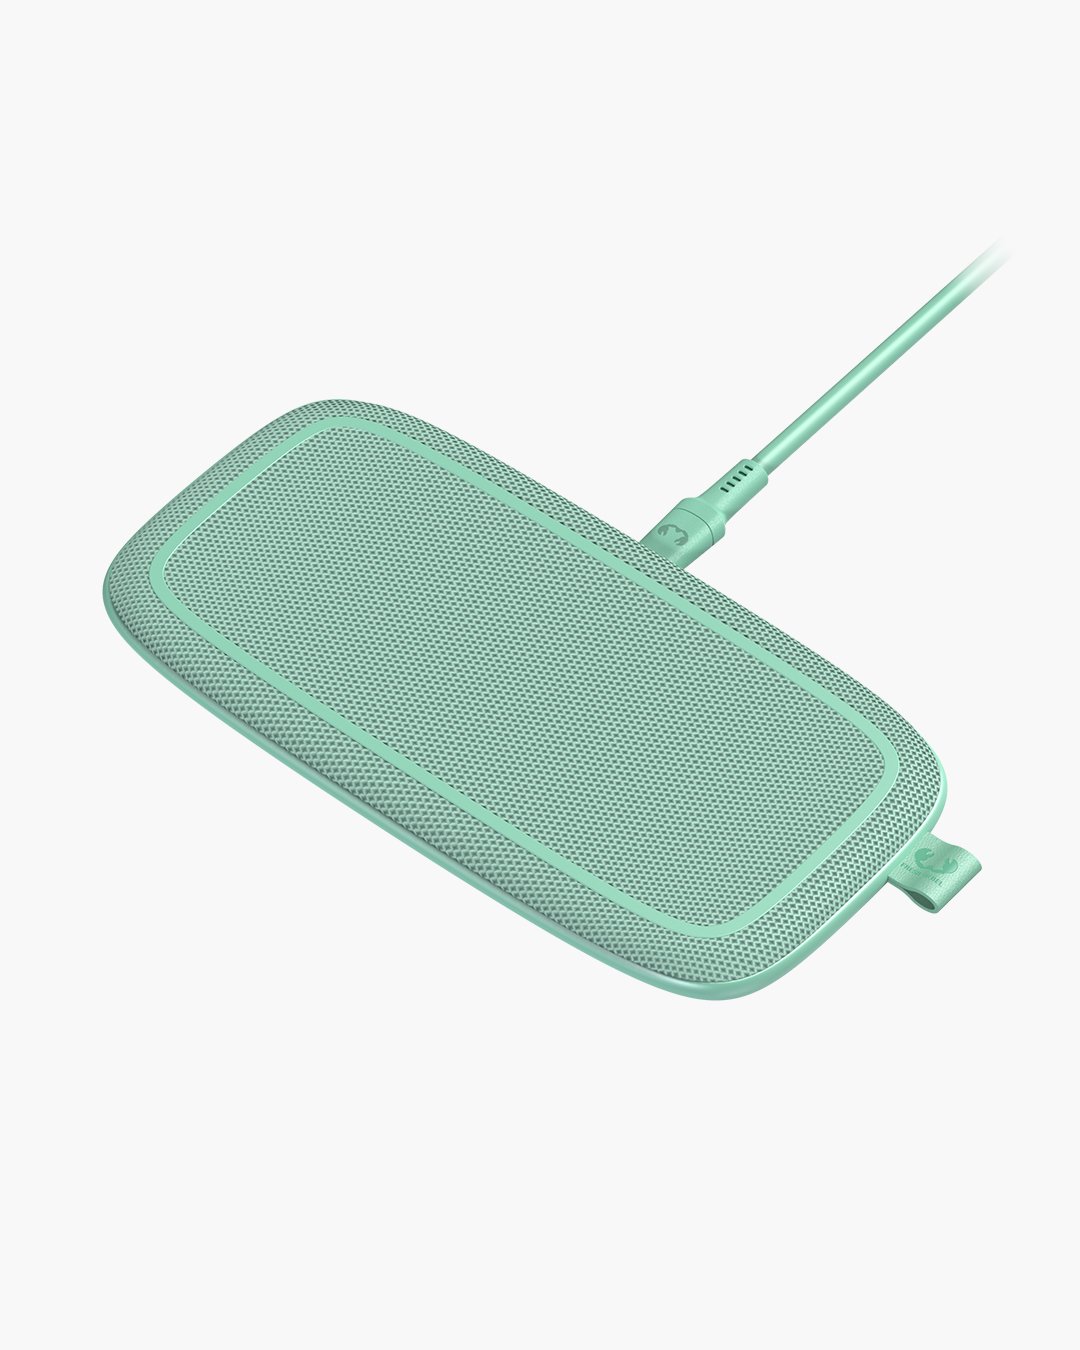 Fresh 'n Rebel - Base Duo- 10W Double Wireless Charging Pad - Misty Mint